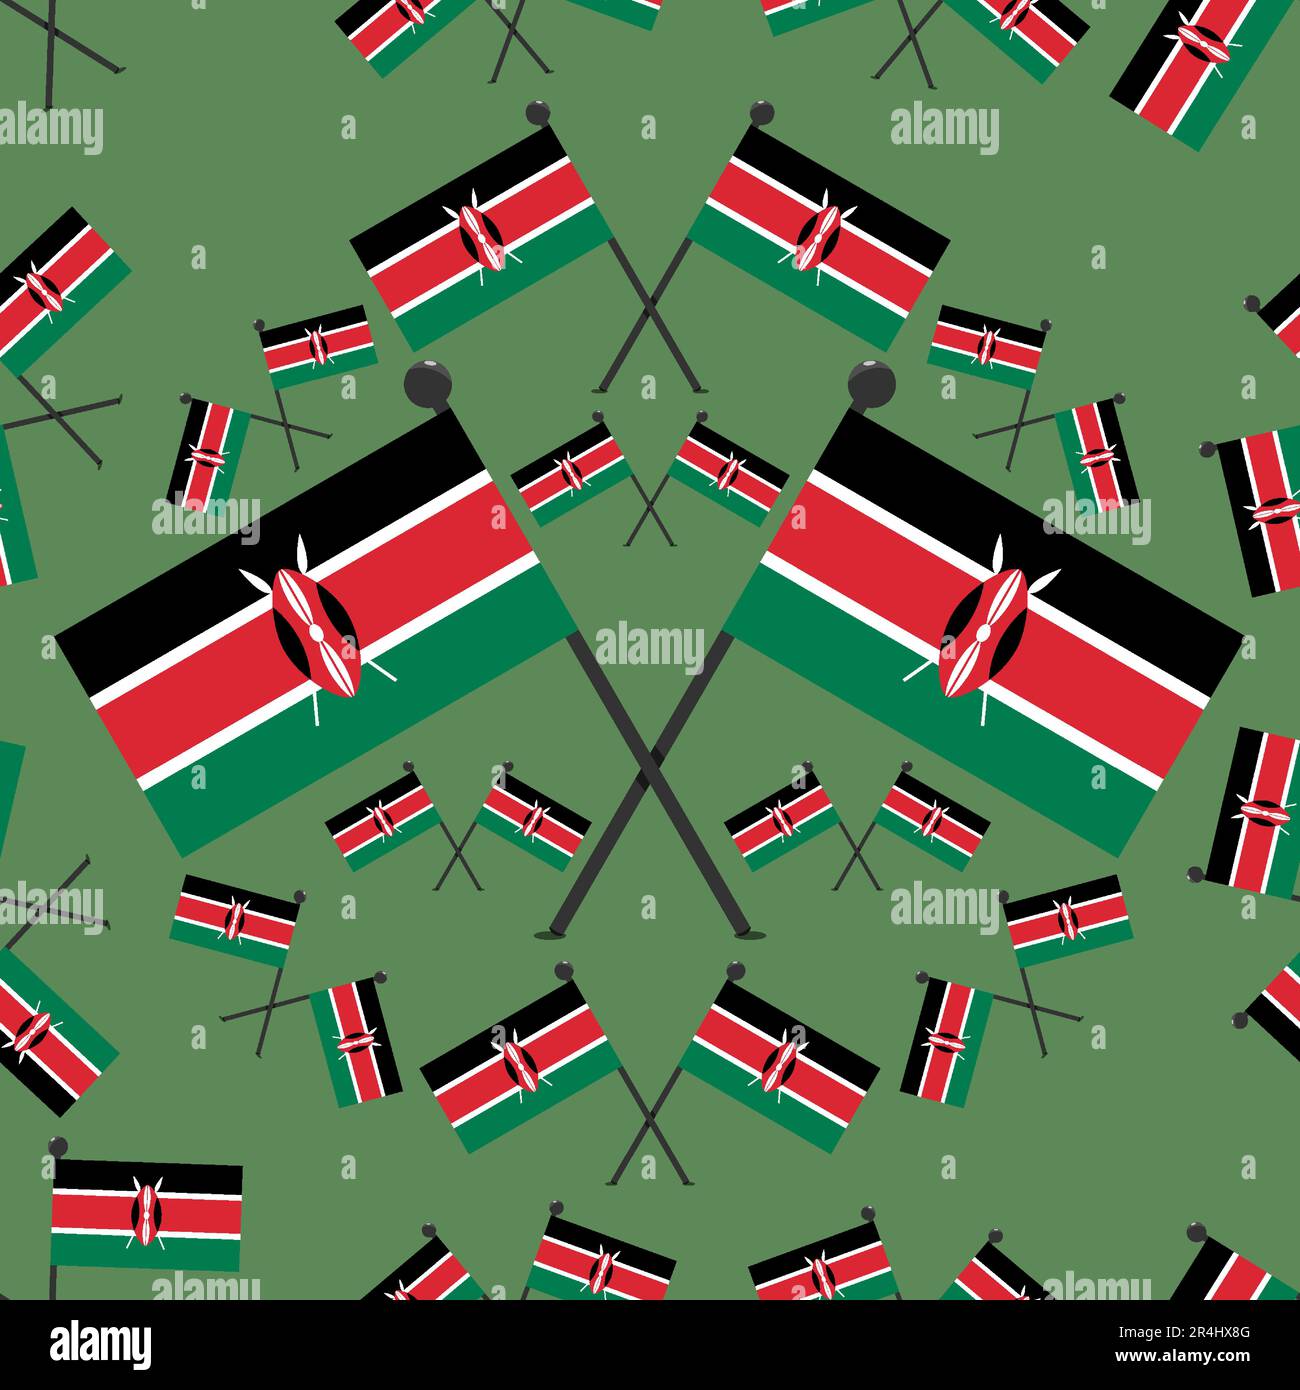 Illustrazione vettoriale delle bandiere di Kenia di modello e sfondo di colore verde scuro. Illustrazione Vettoriale